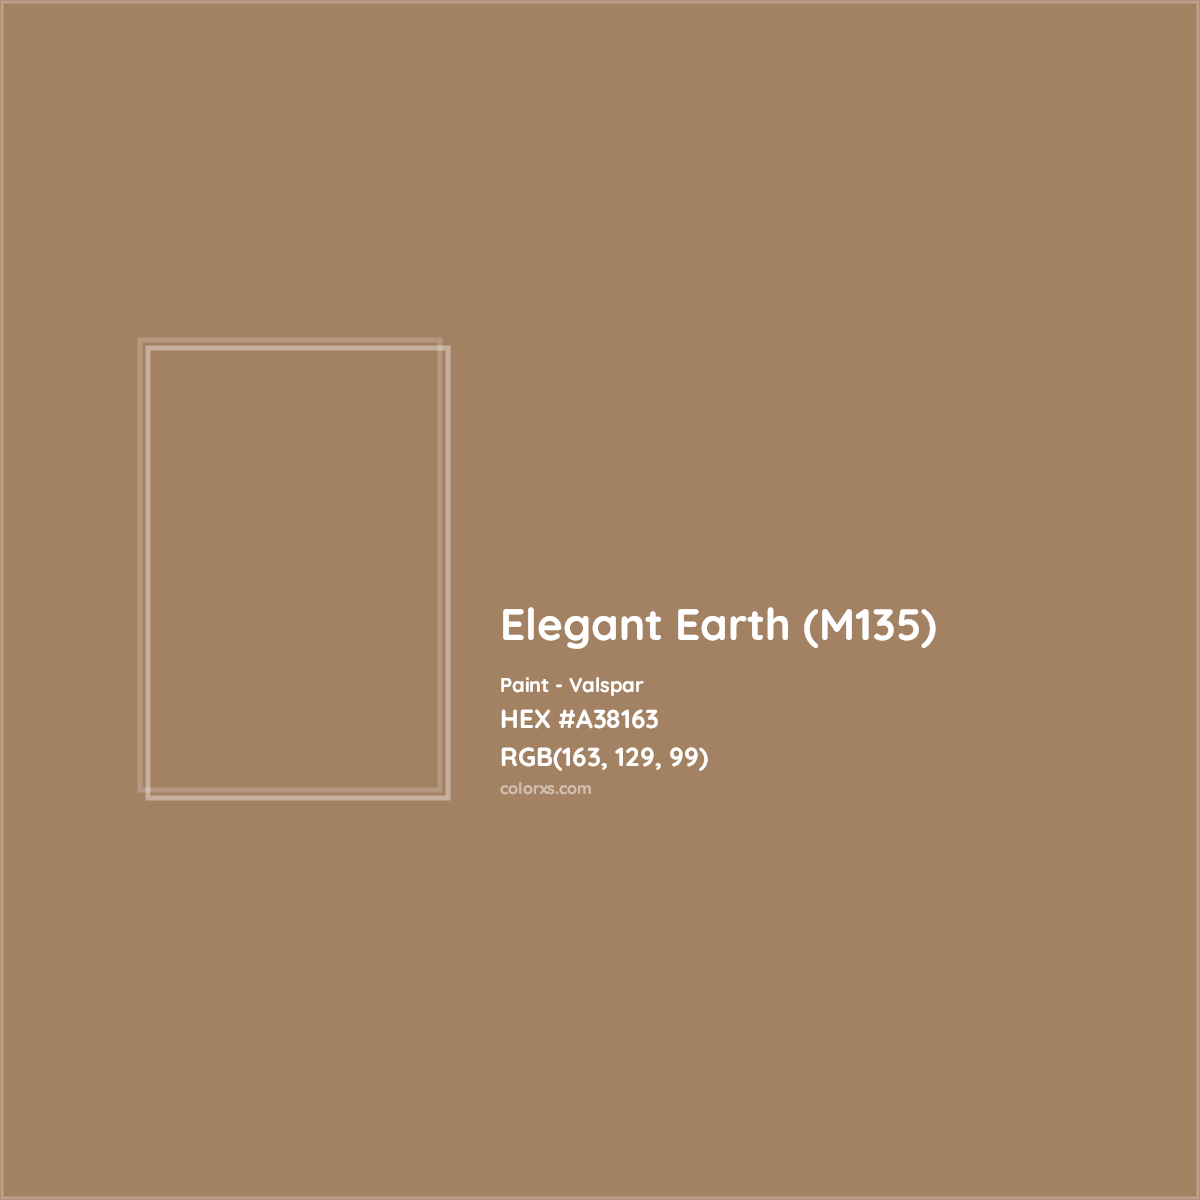 HEX #A38163 Elegant Earth (M135) Paint Valspar - Color Code